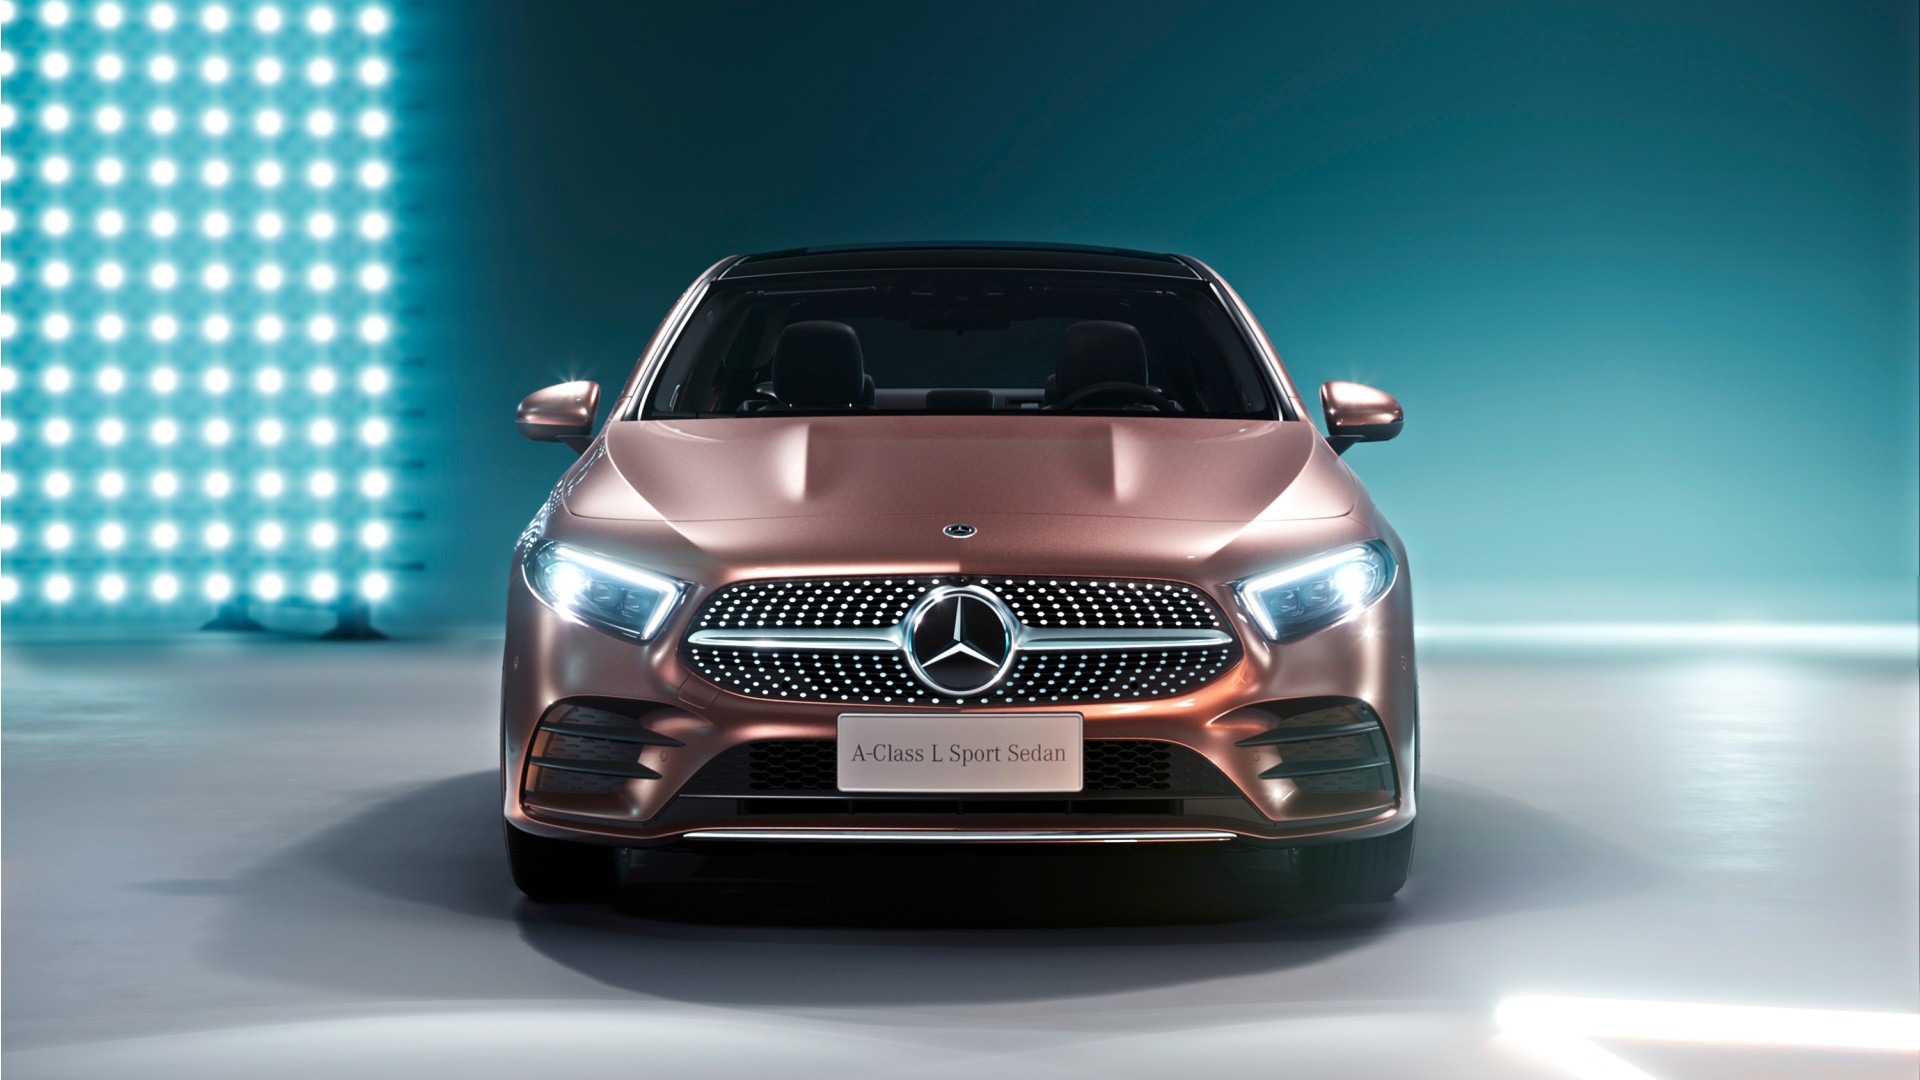 2019 Mercedes Benz A200 L Sport Sedan Wallpaper | HD Car Wallpapers